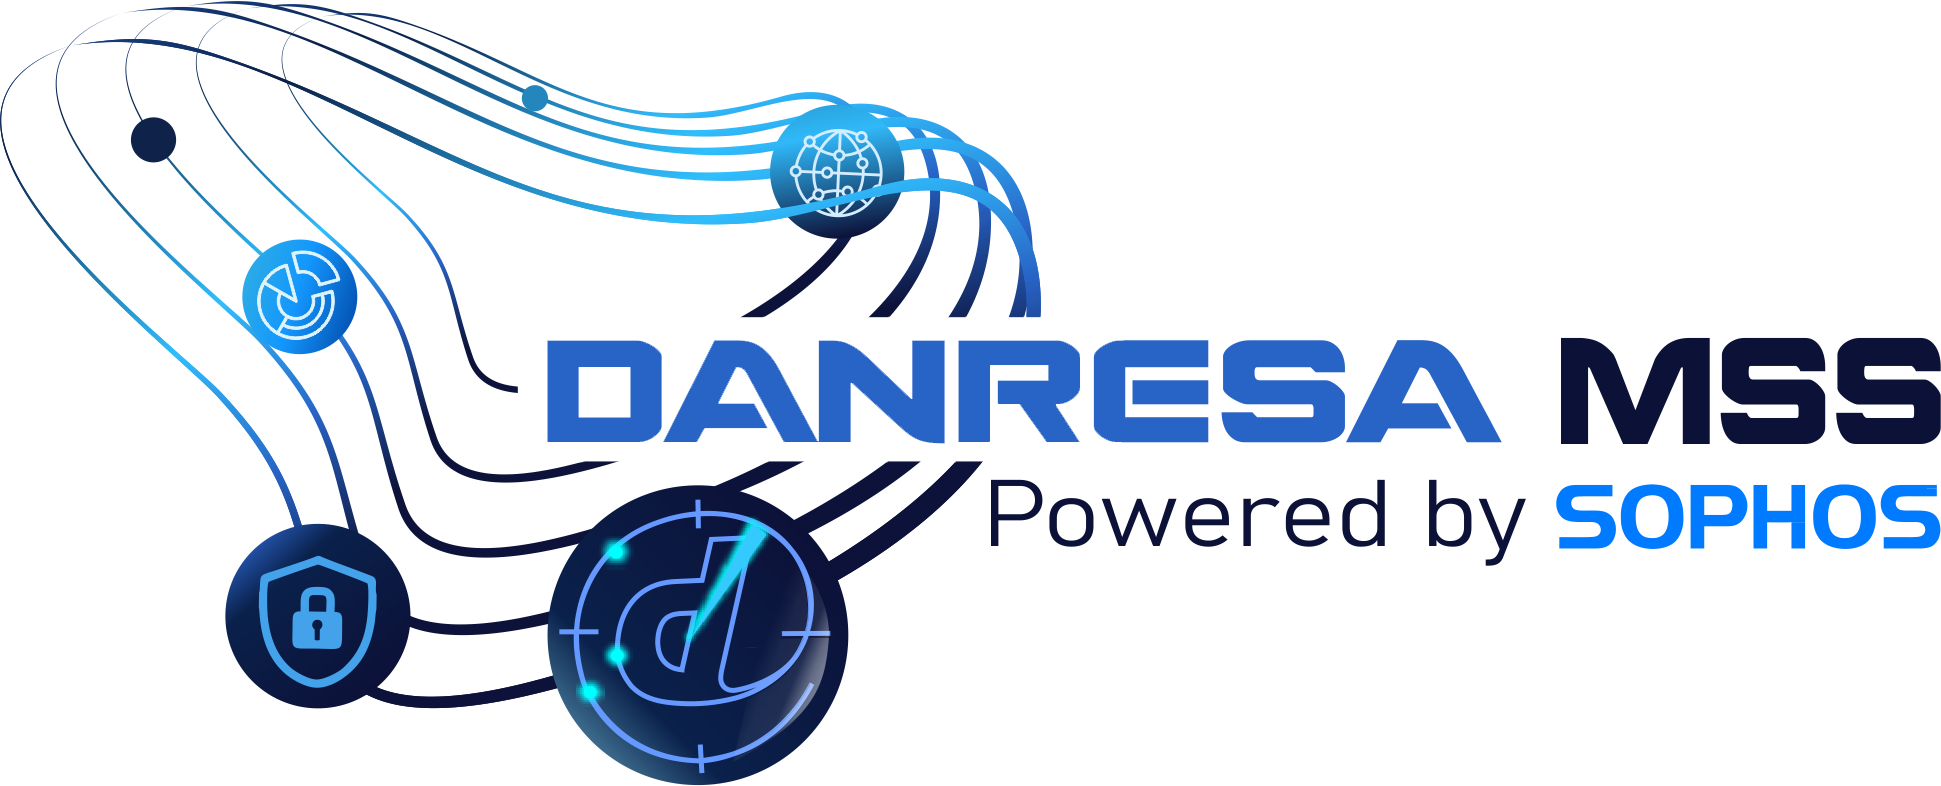 DANRESA MSS Powered By Sophos